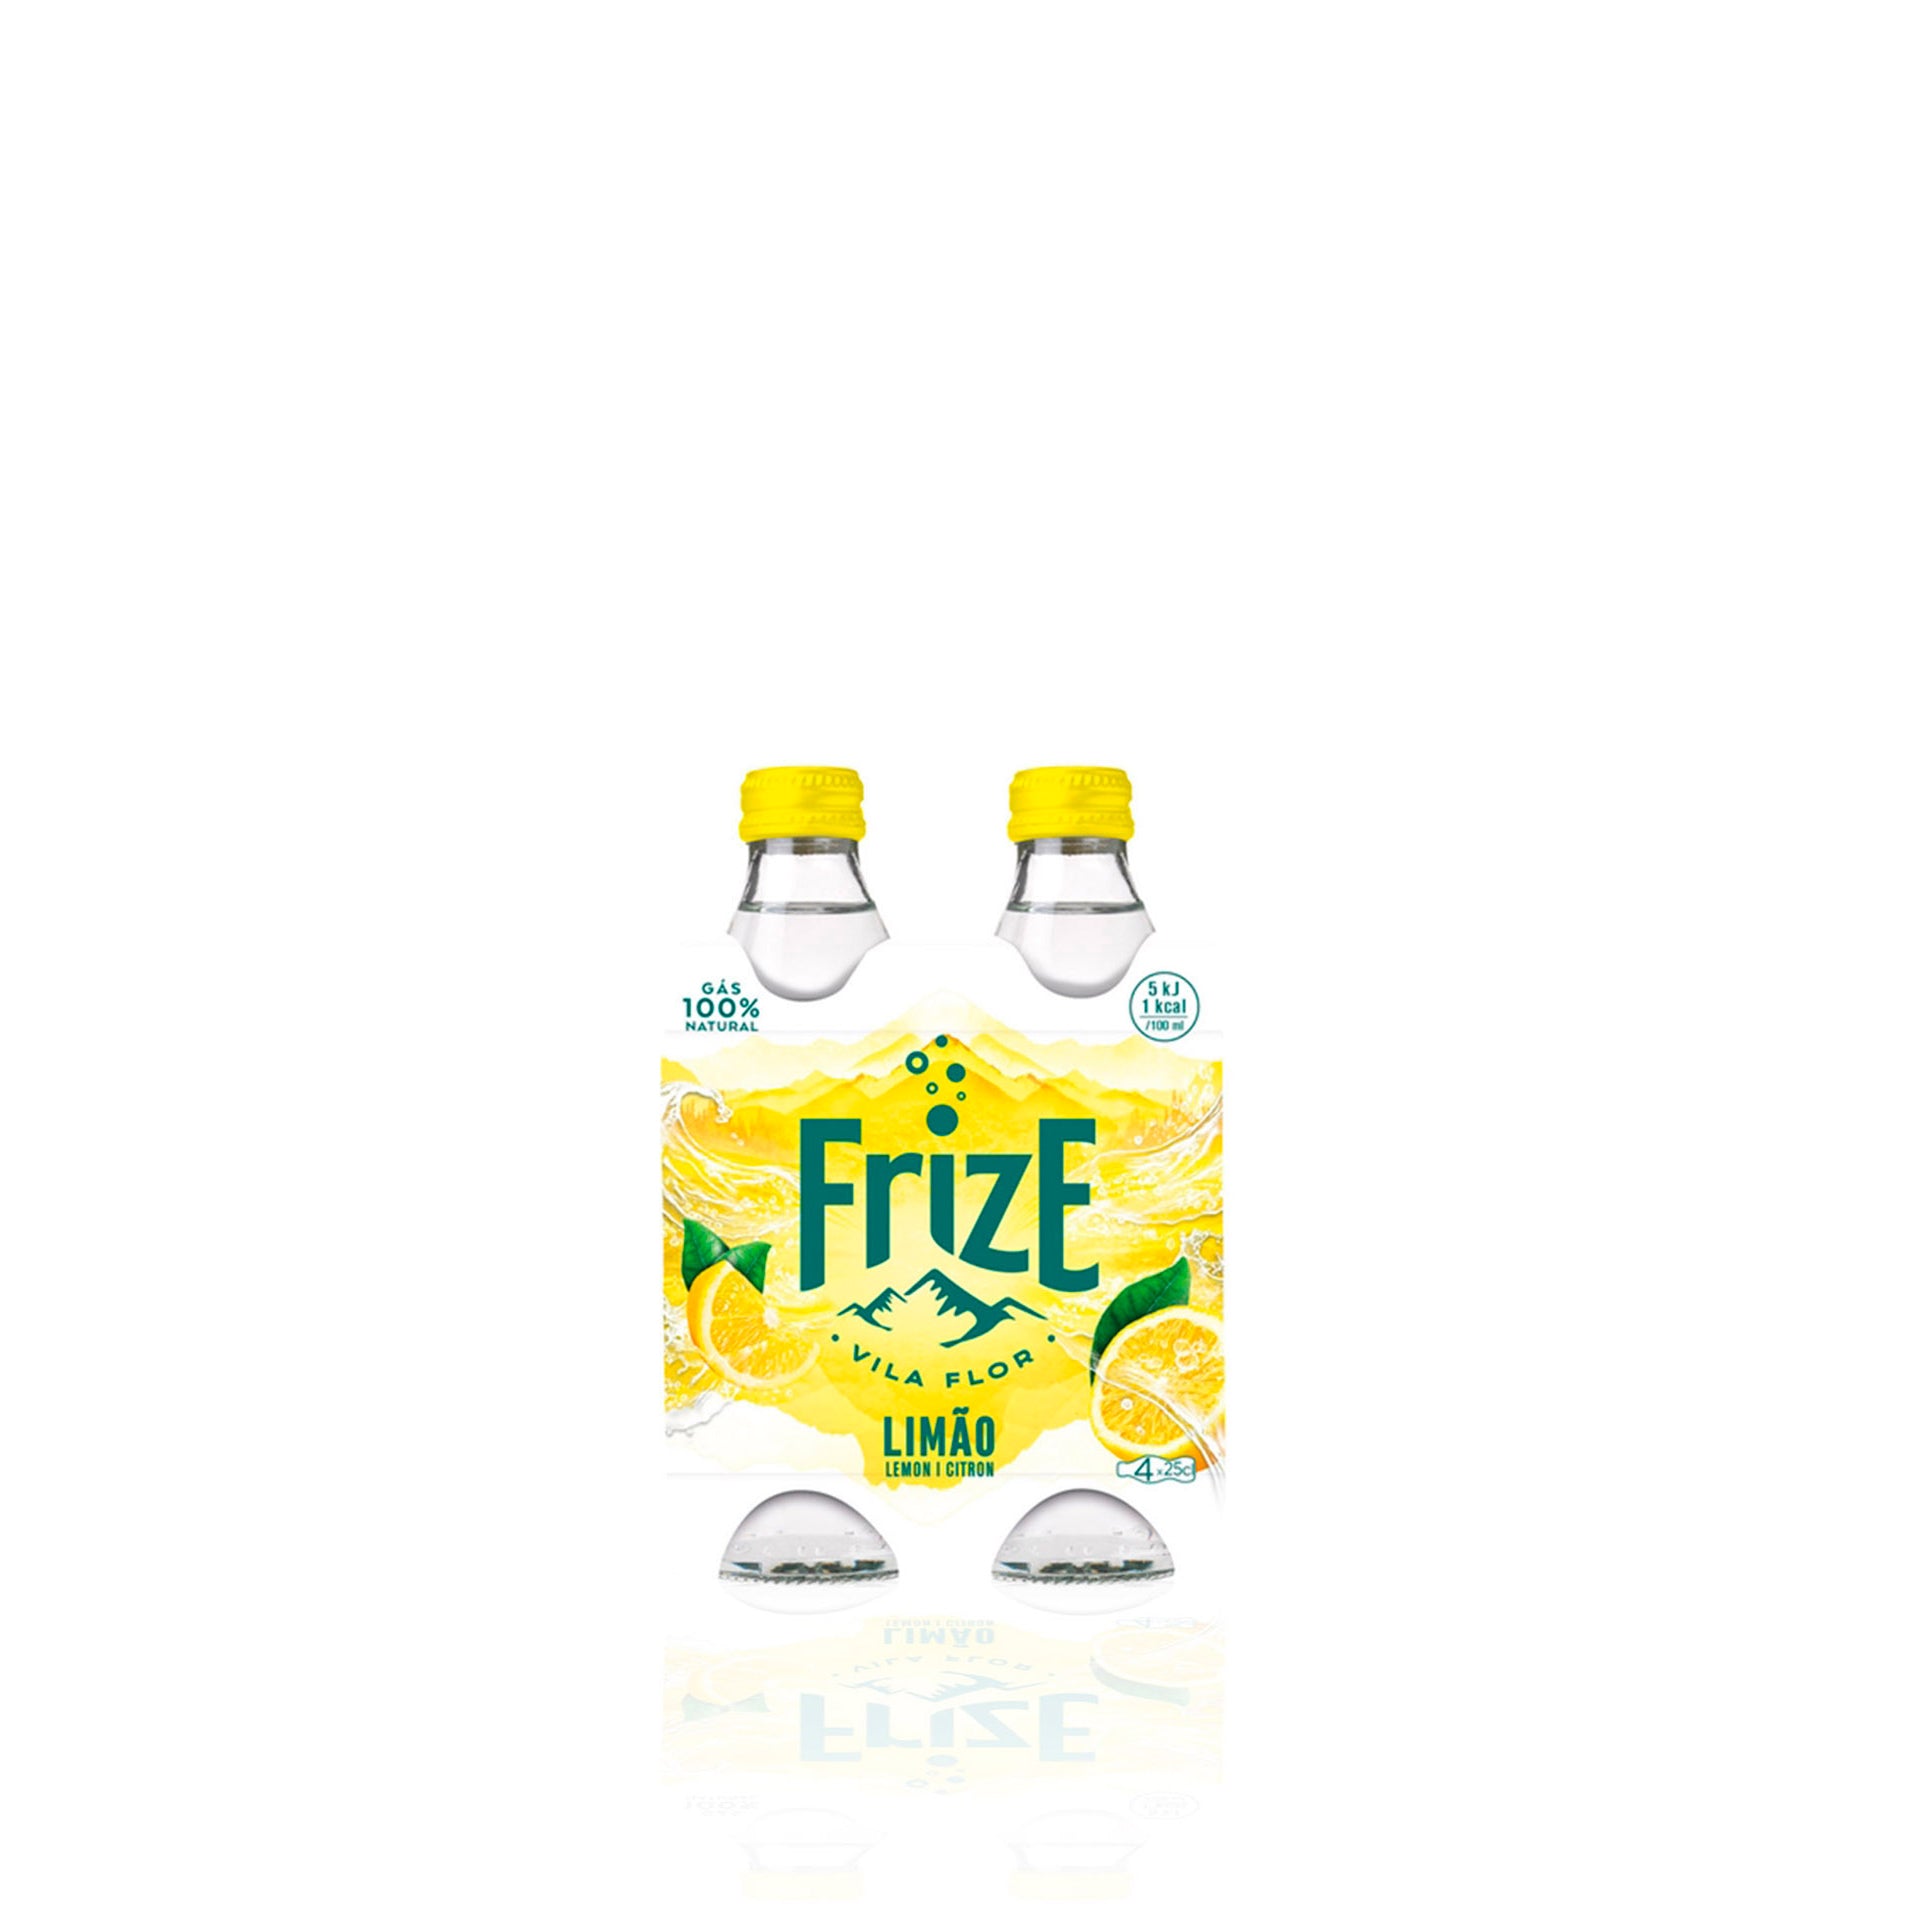 Frize Água com Gás Natural Limão 25 cl - Pack 4 x 25 cl